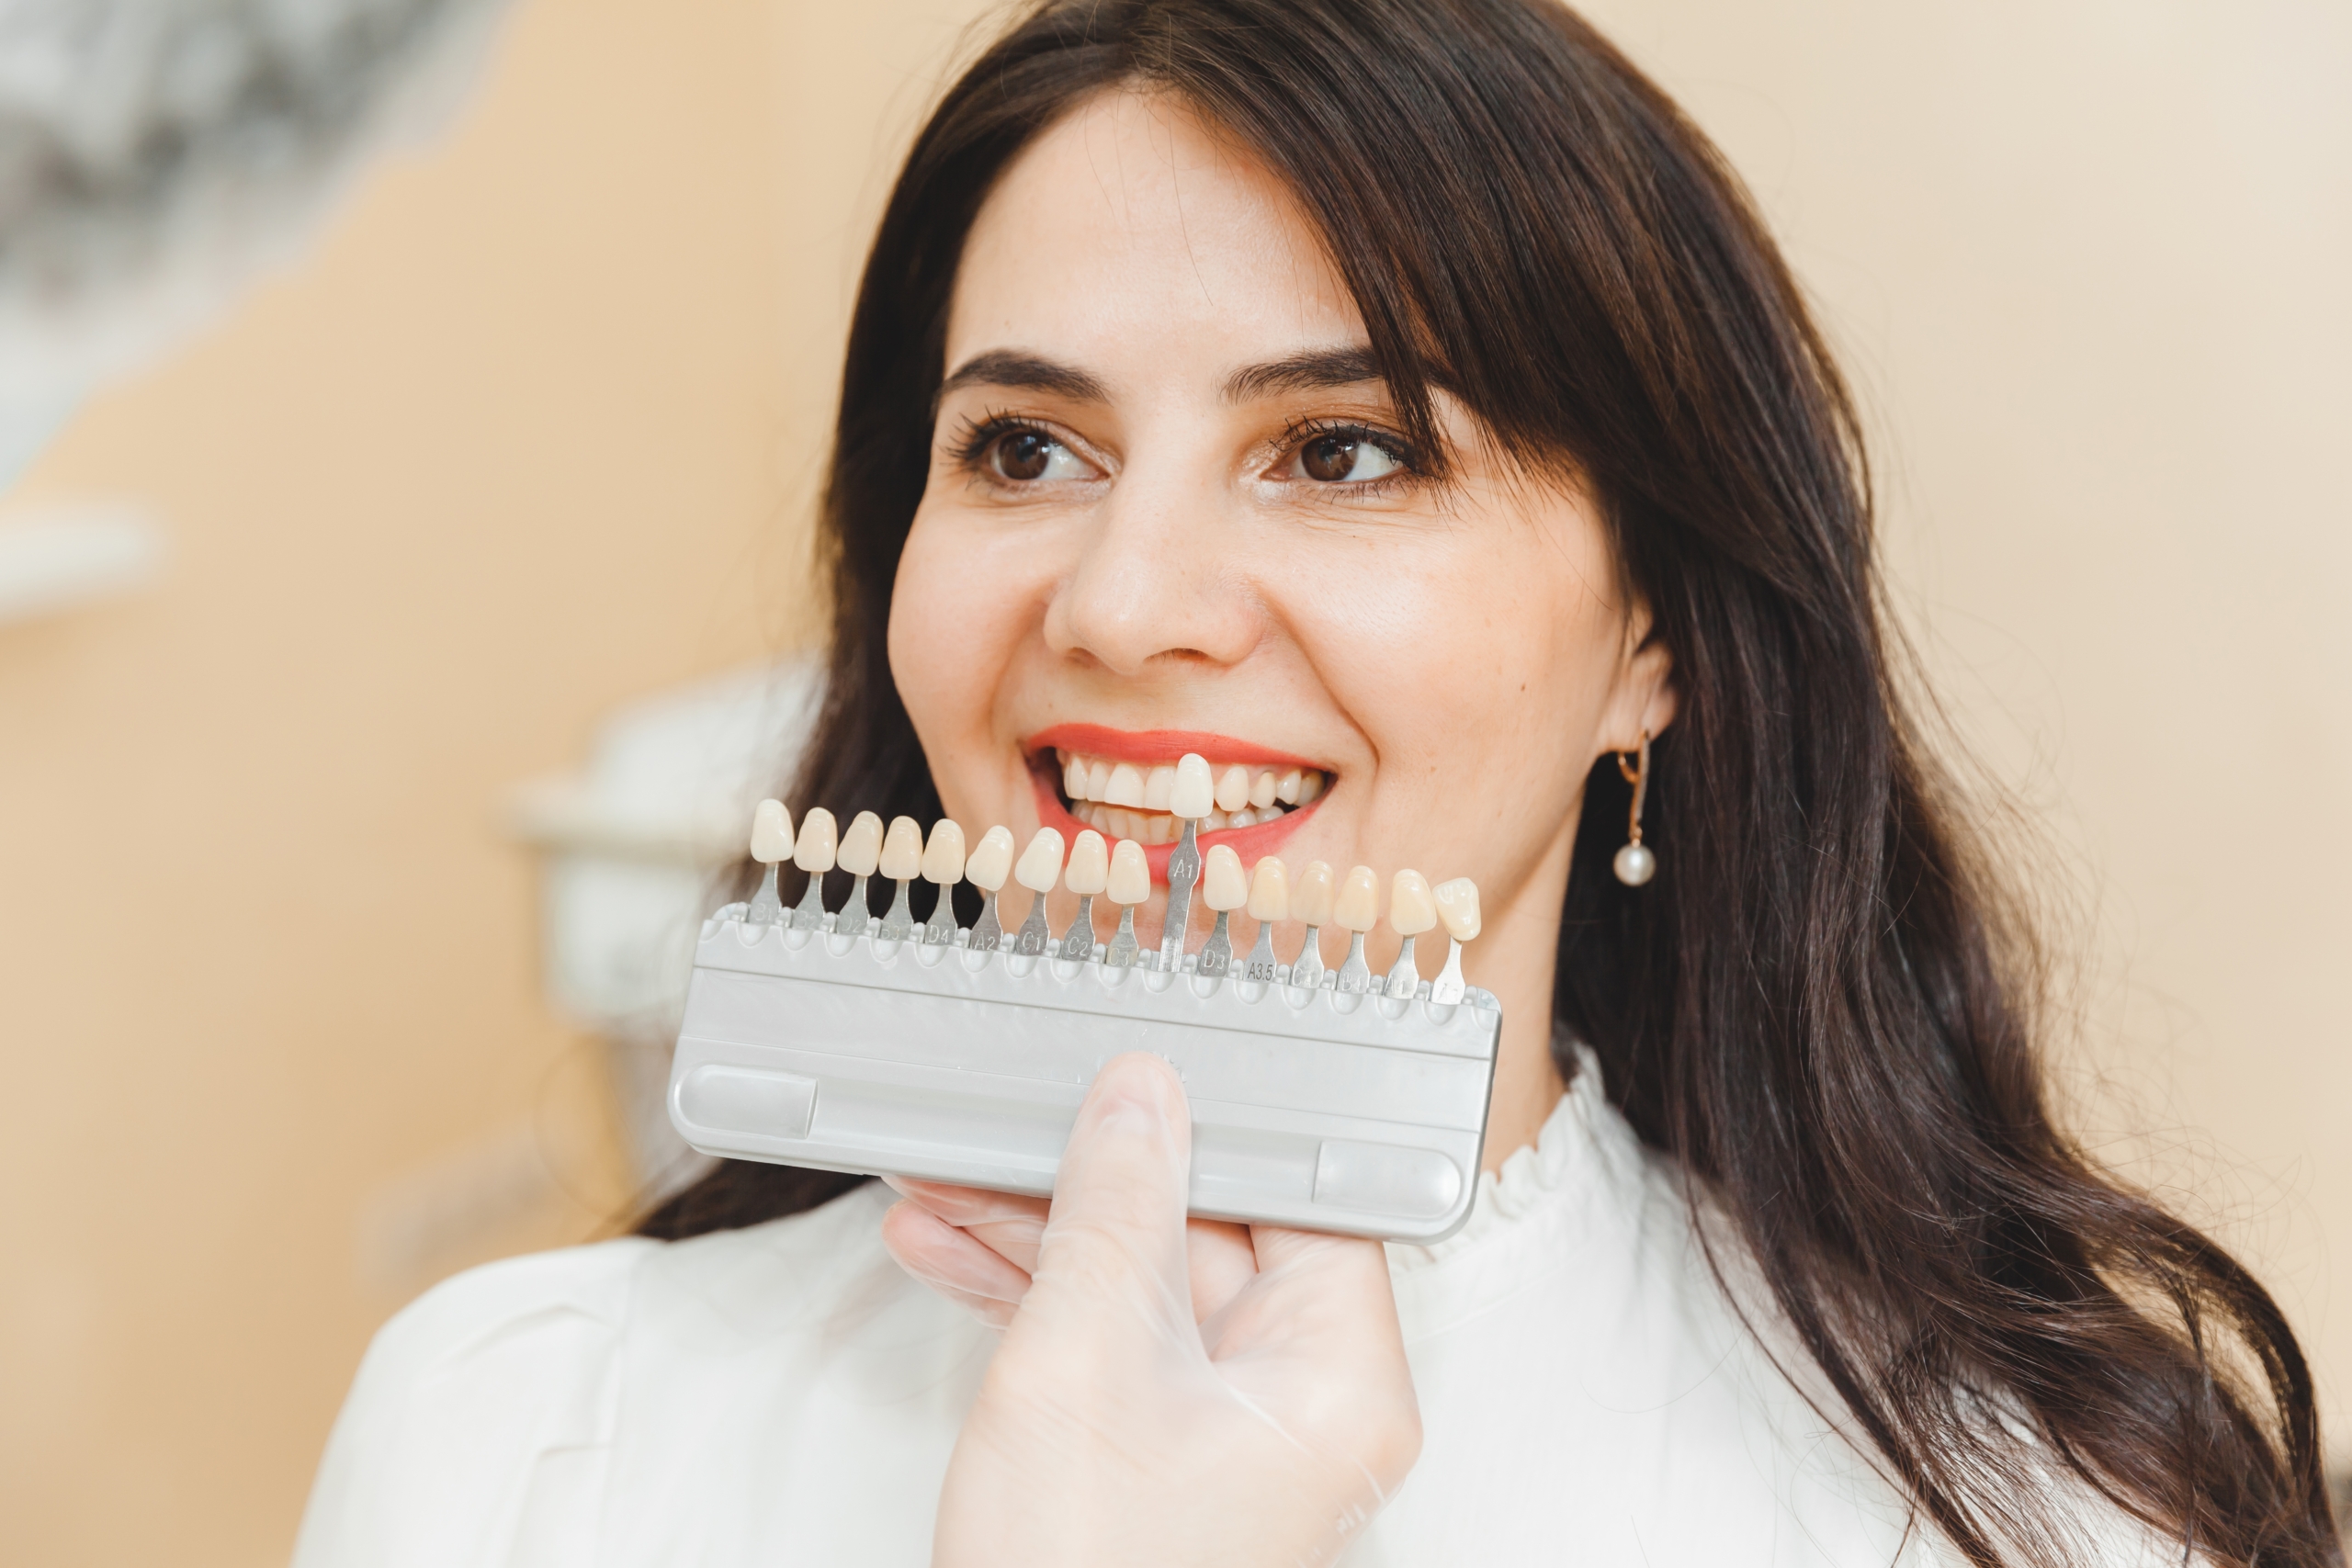 Frau bei der Auswahl der richtigen Zahnfarbe für die professionelle kosmetische Aufhellung beim Zahnarzt.